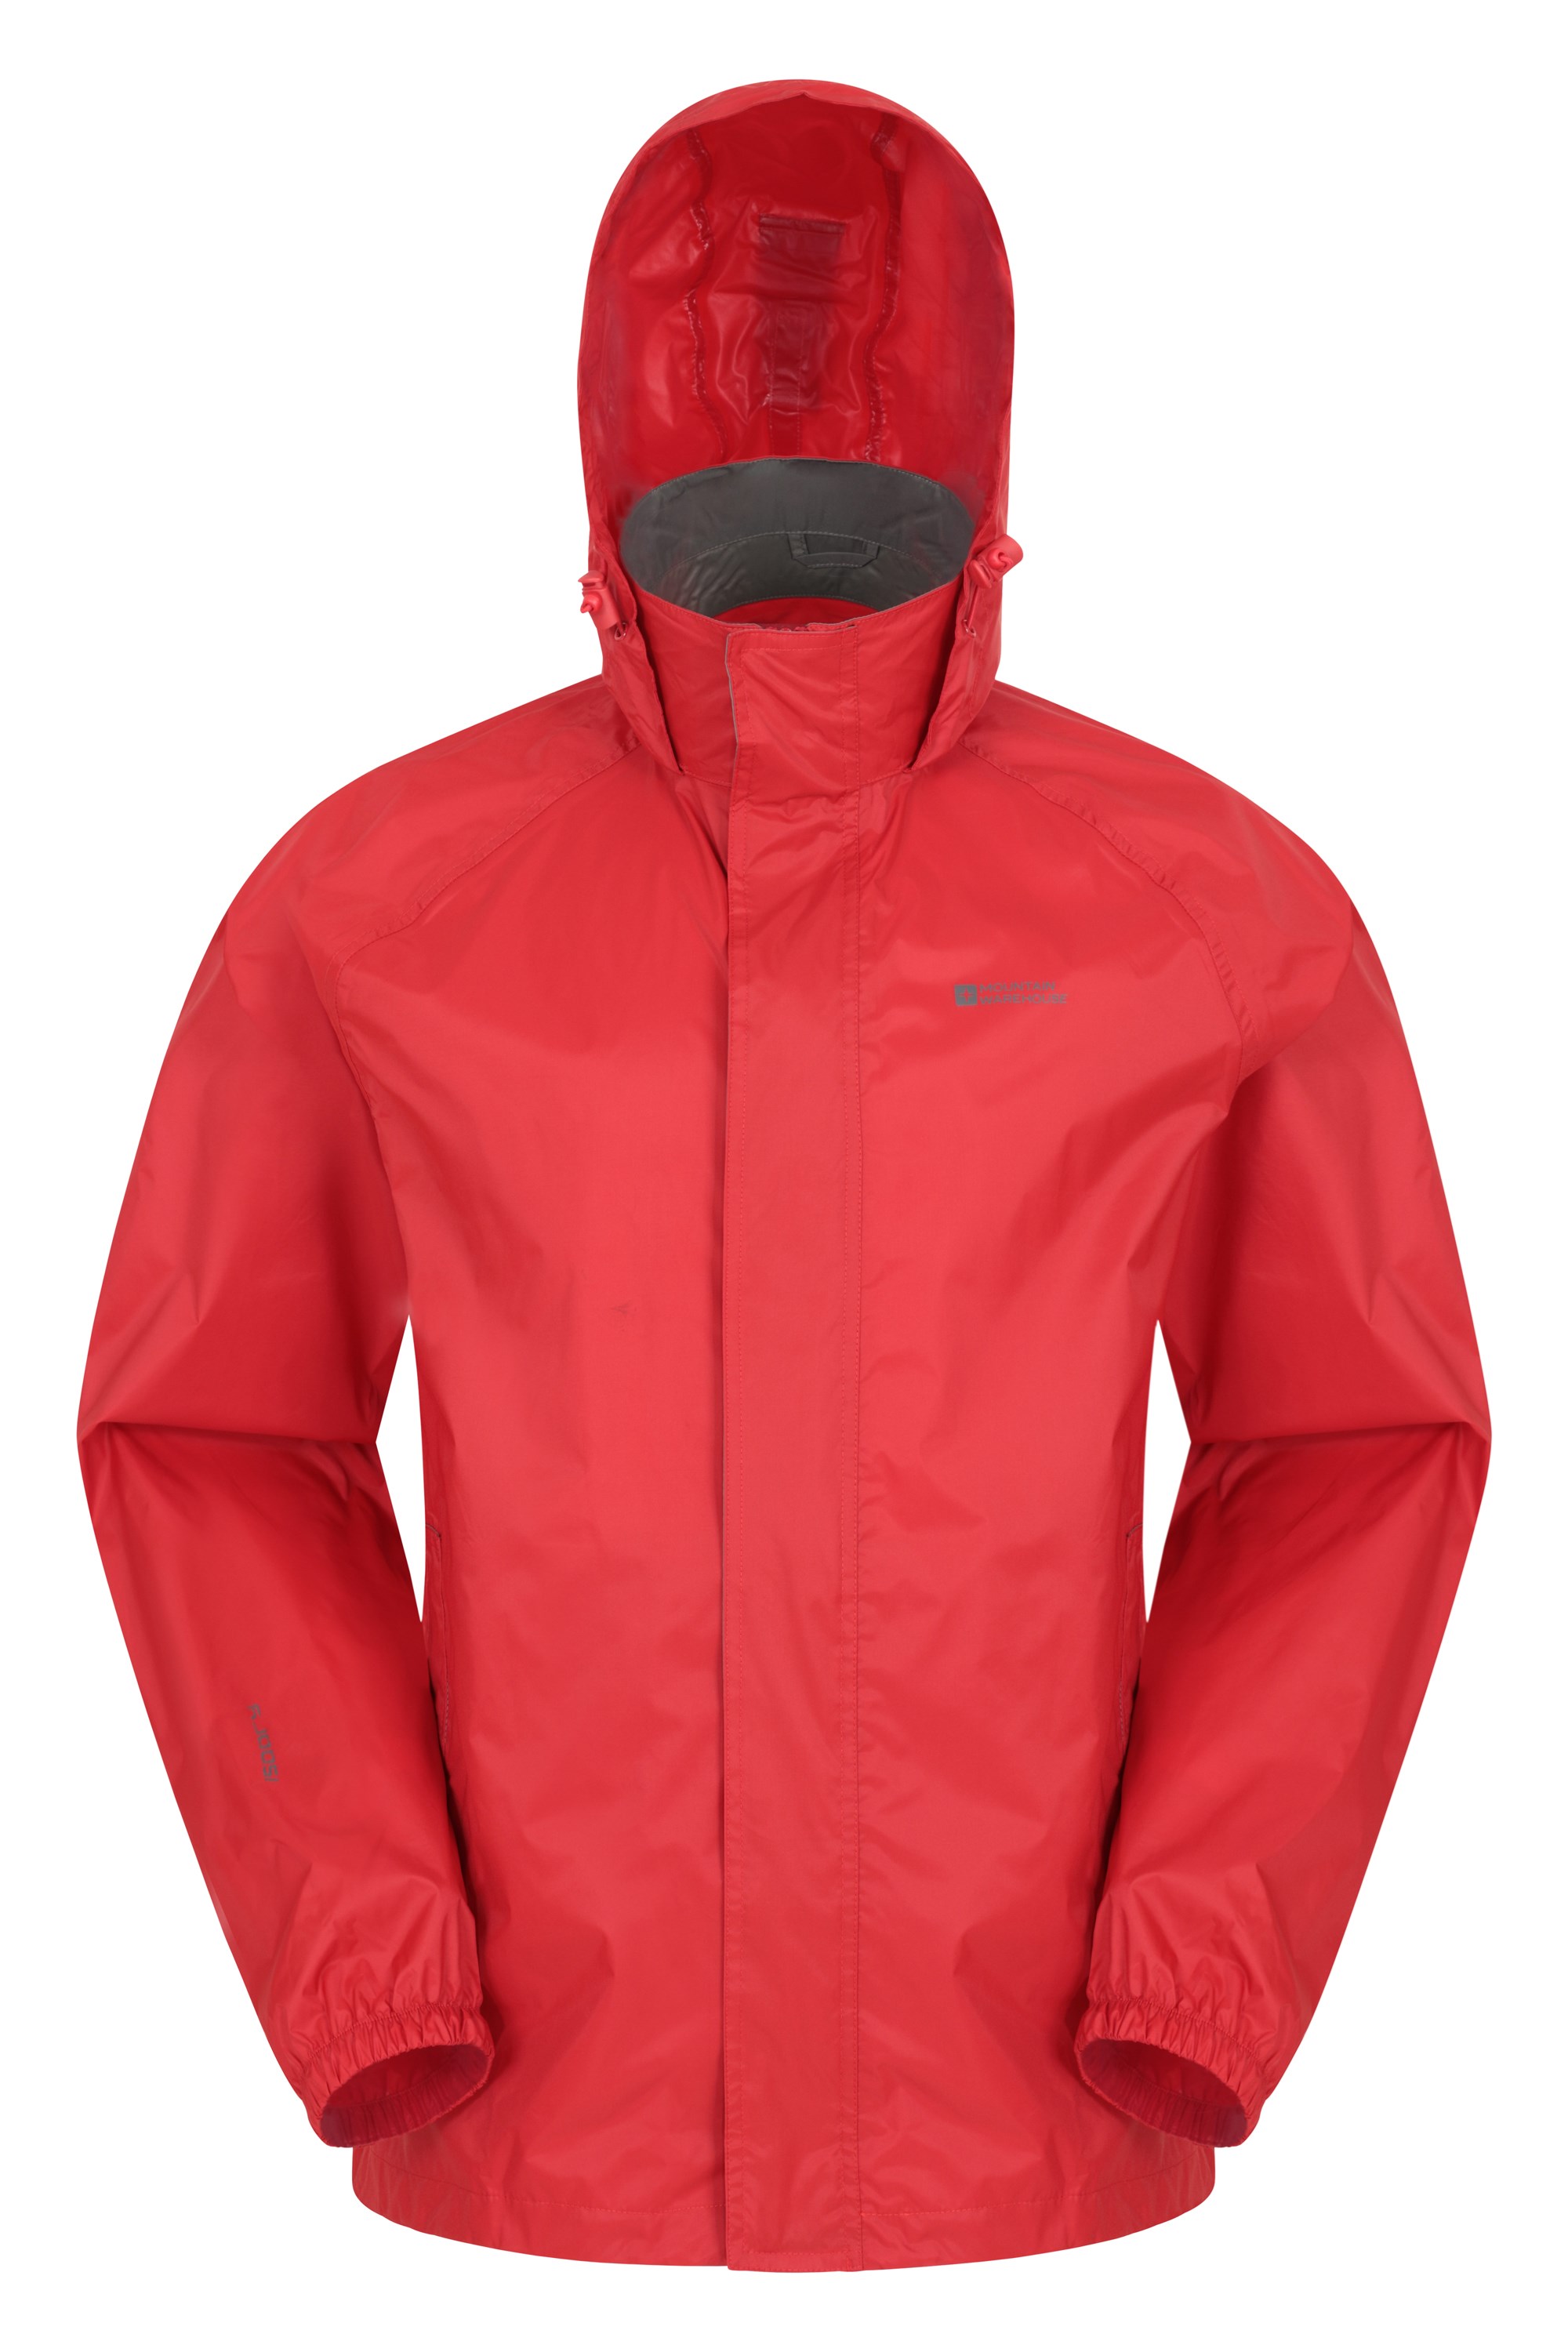 Pakka Mens Waterproof Jacket - Red